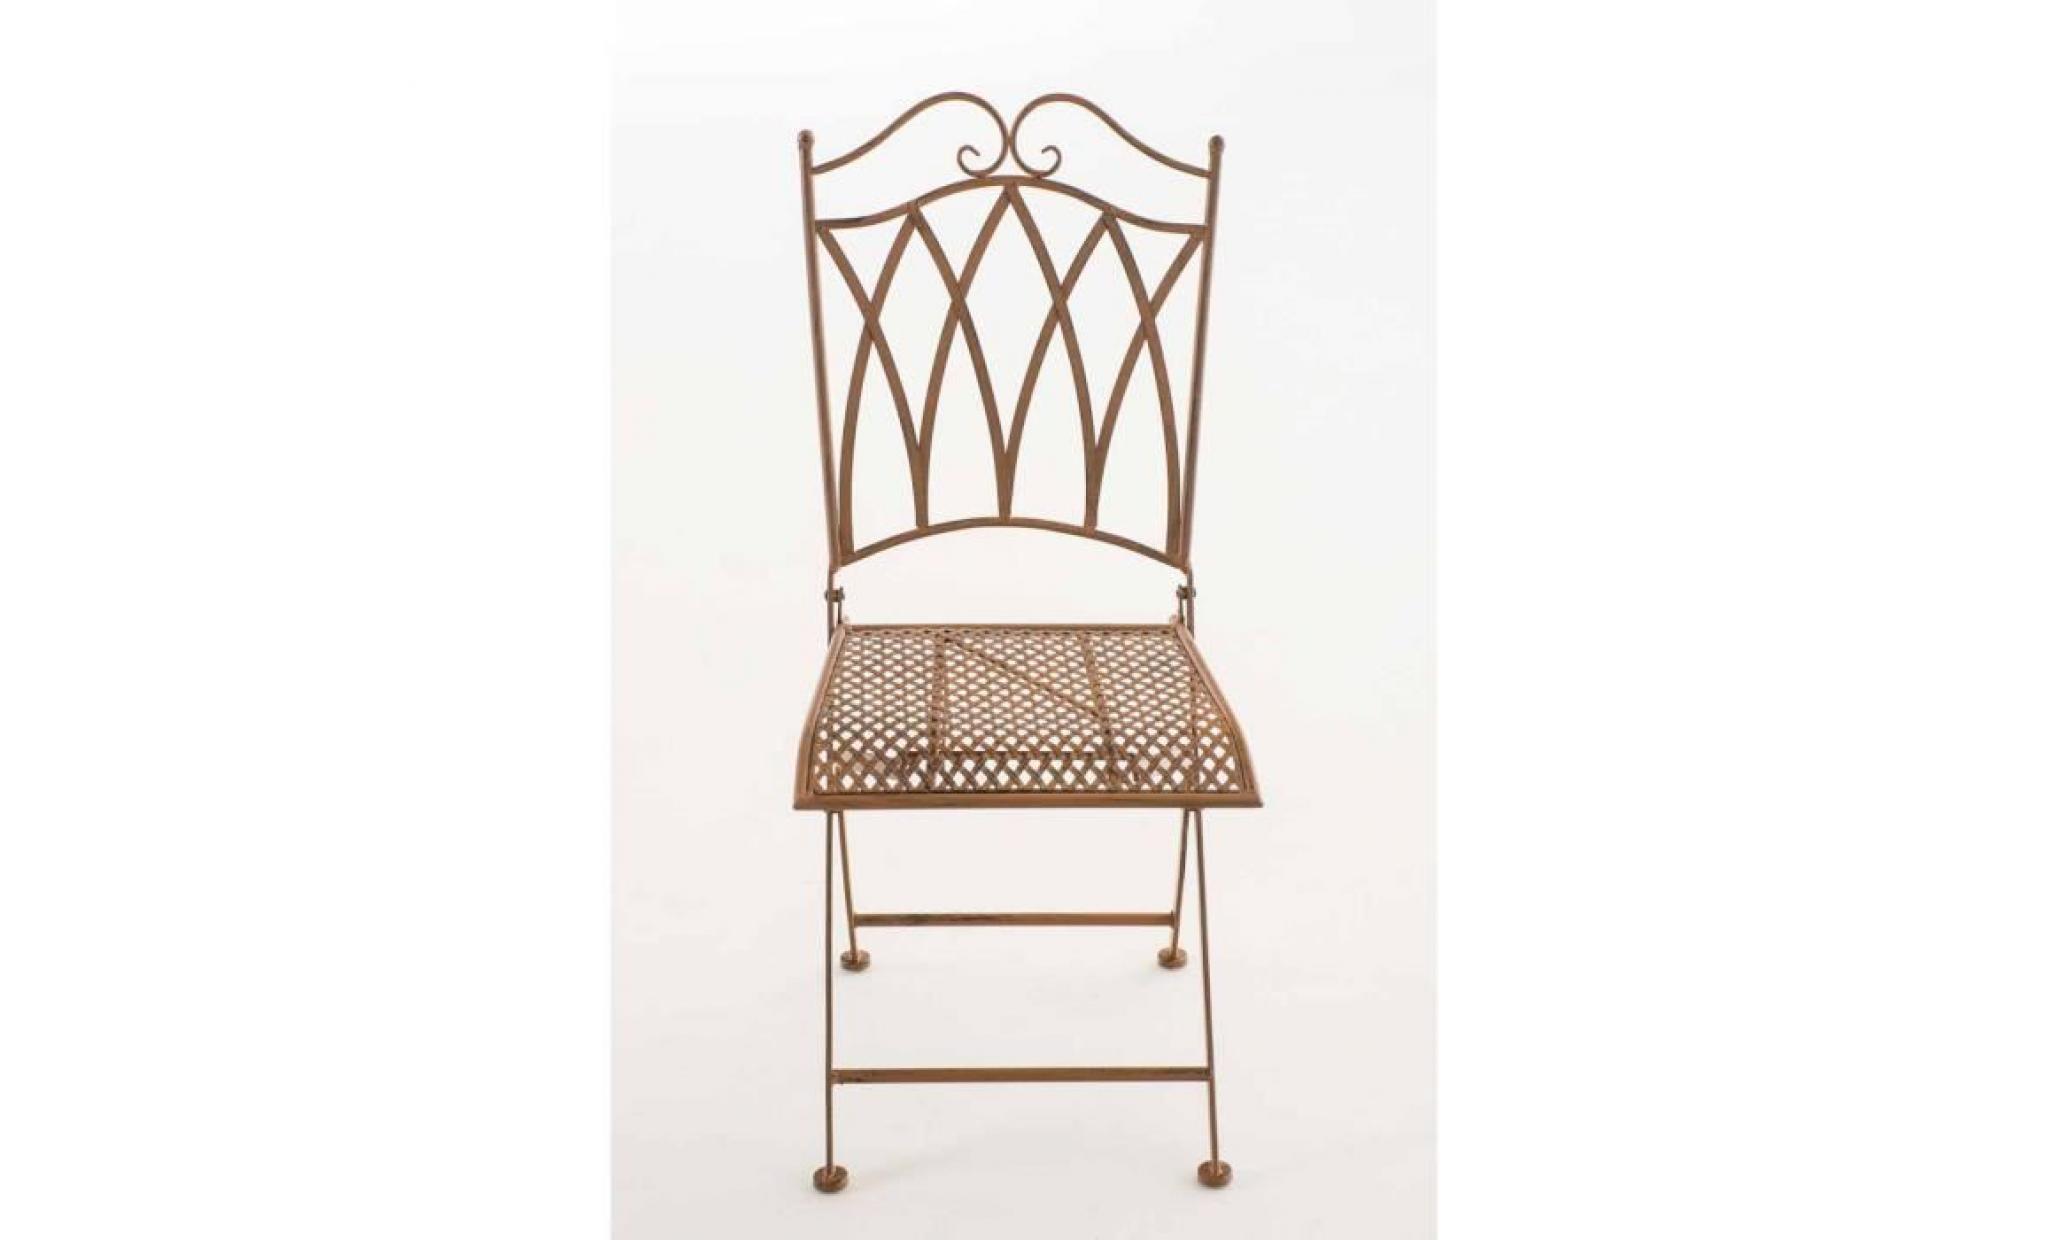 clp chaise nostalgique pliable lunis, chaise fer forgé, chaise pliante, chaise antique, 6 couleurs au choix 91 cm blanc antique pas cher